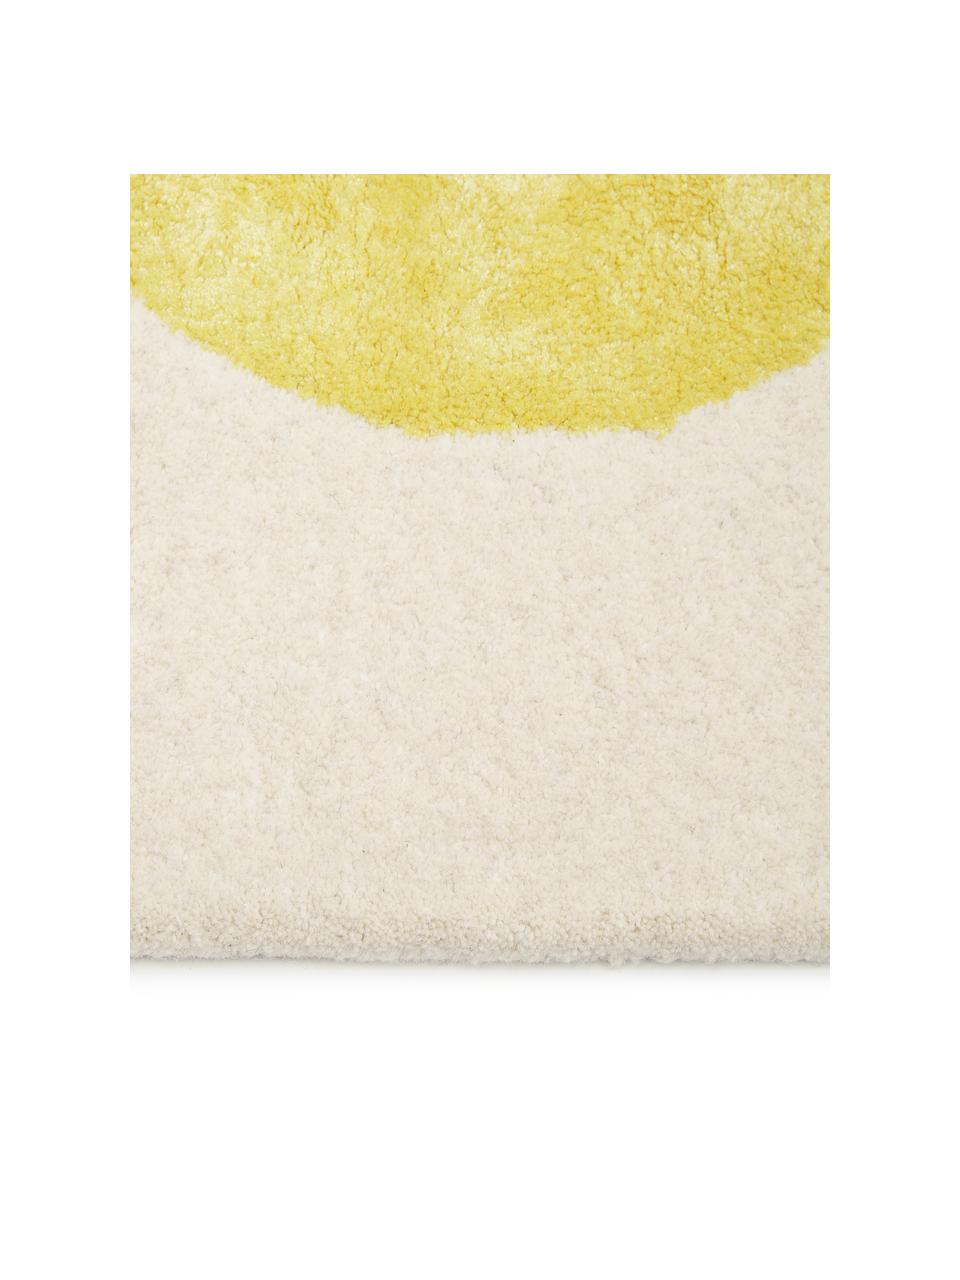 Handgetufteter Wollteppich Ladla mit abstraktem Muster, Wolle, Viskose, Mehrfarbig, B 140 x L 200 cm (Größe S)